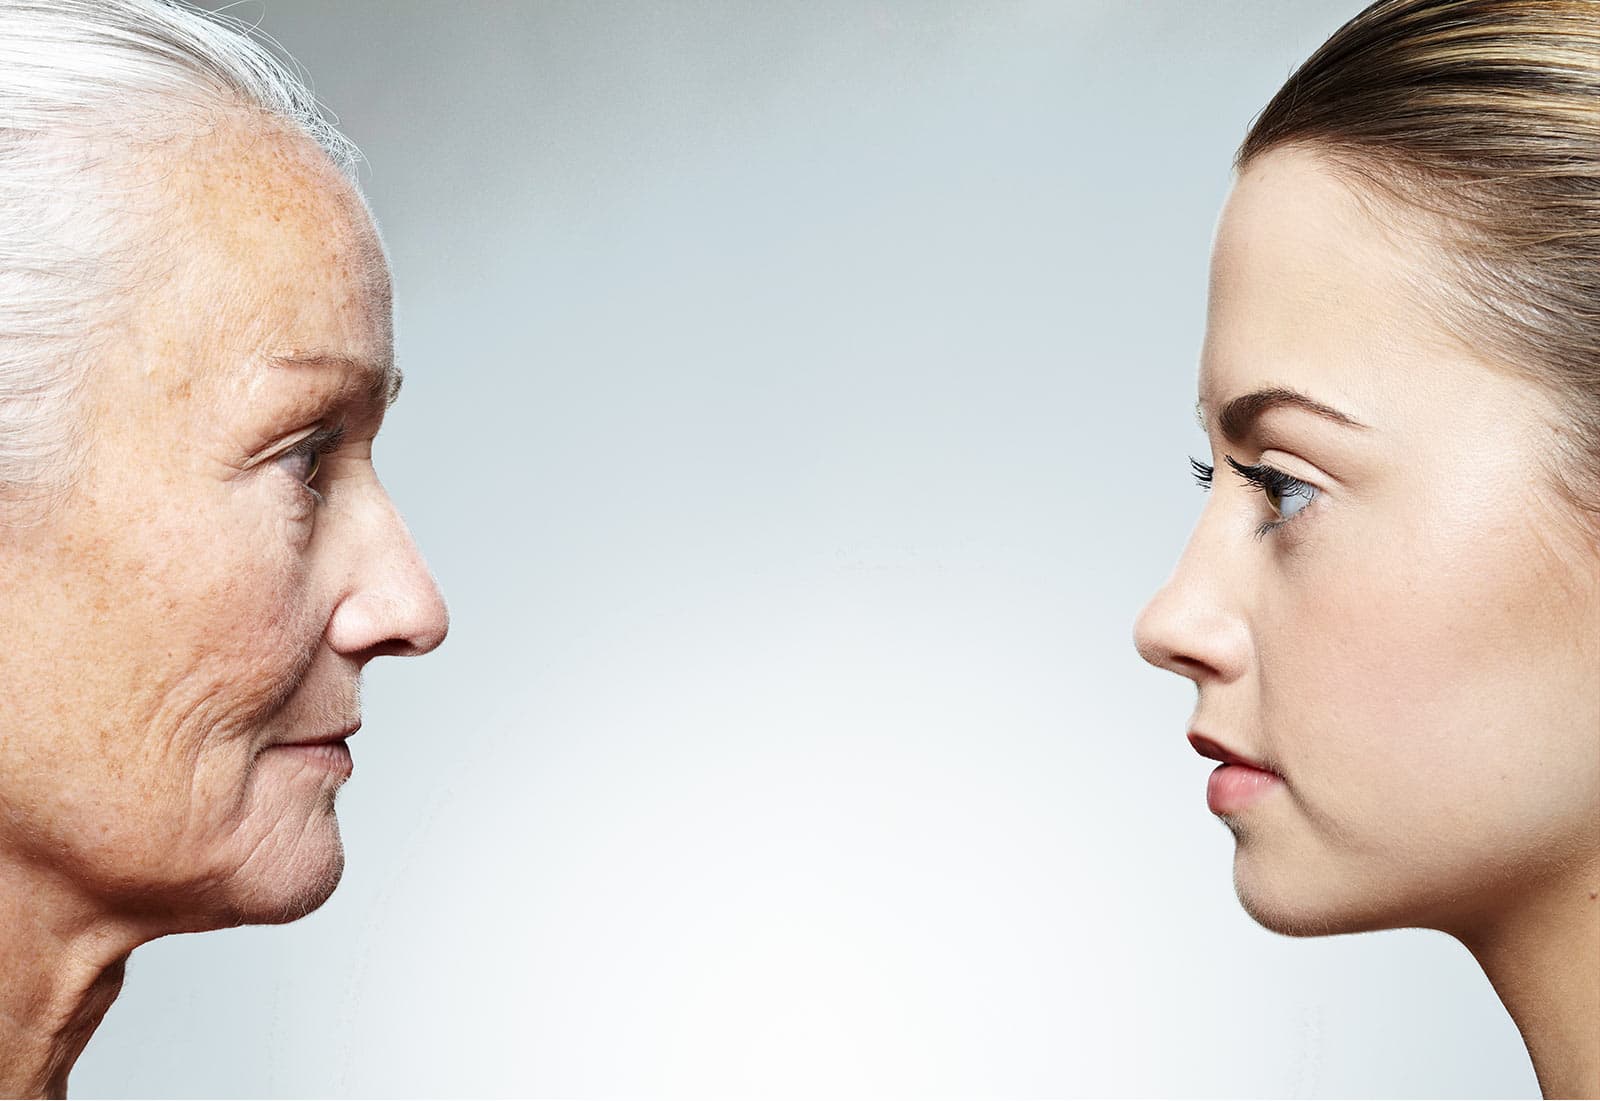 Seitenansicht zweier Gesichter – eine ältere Dame schaut eine junge Frau an.